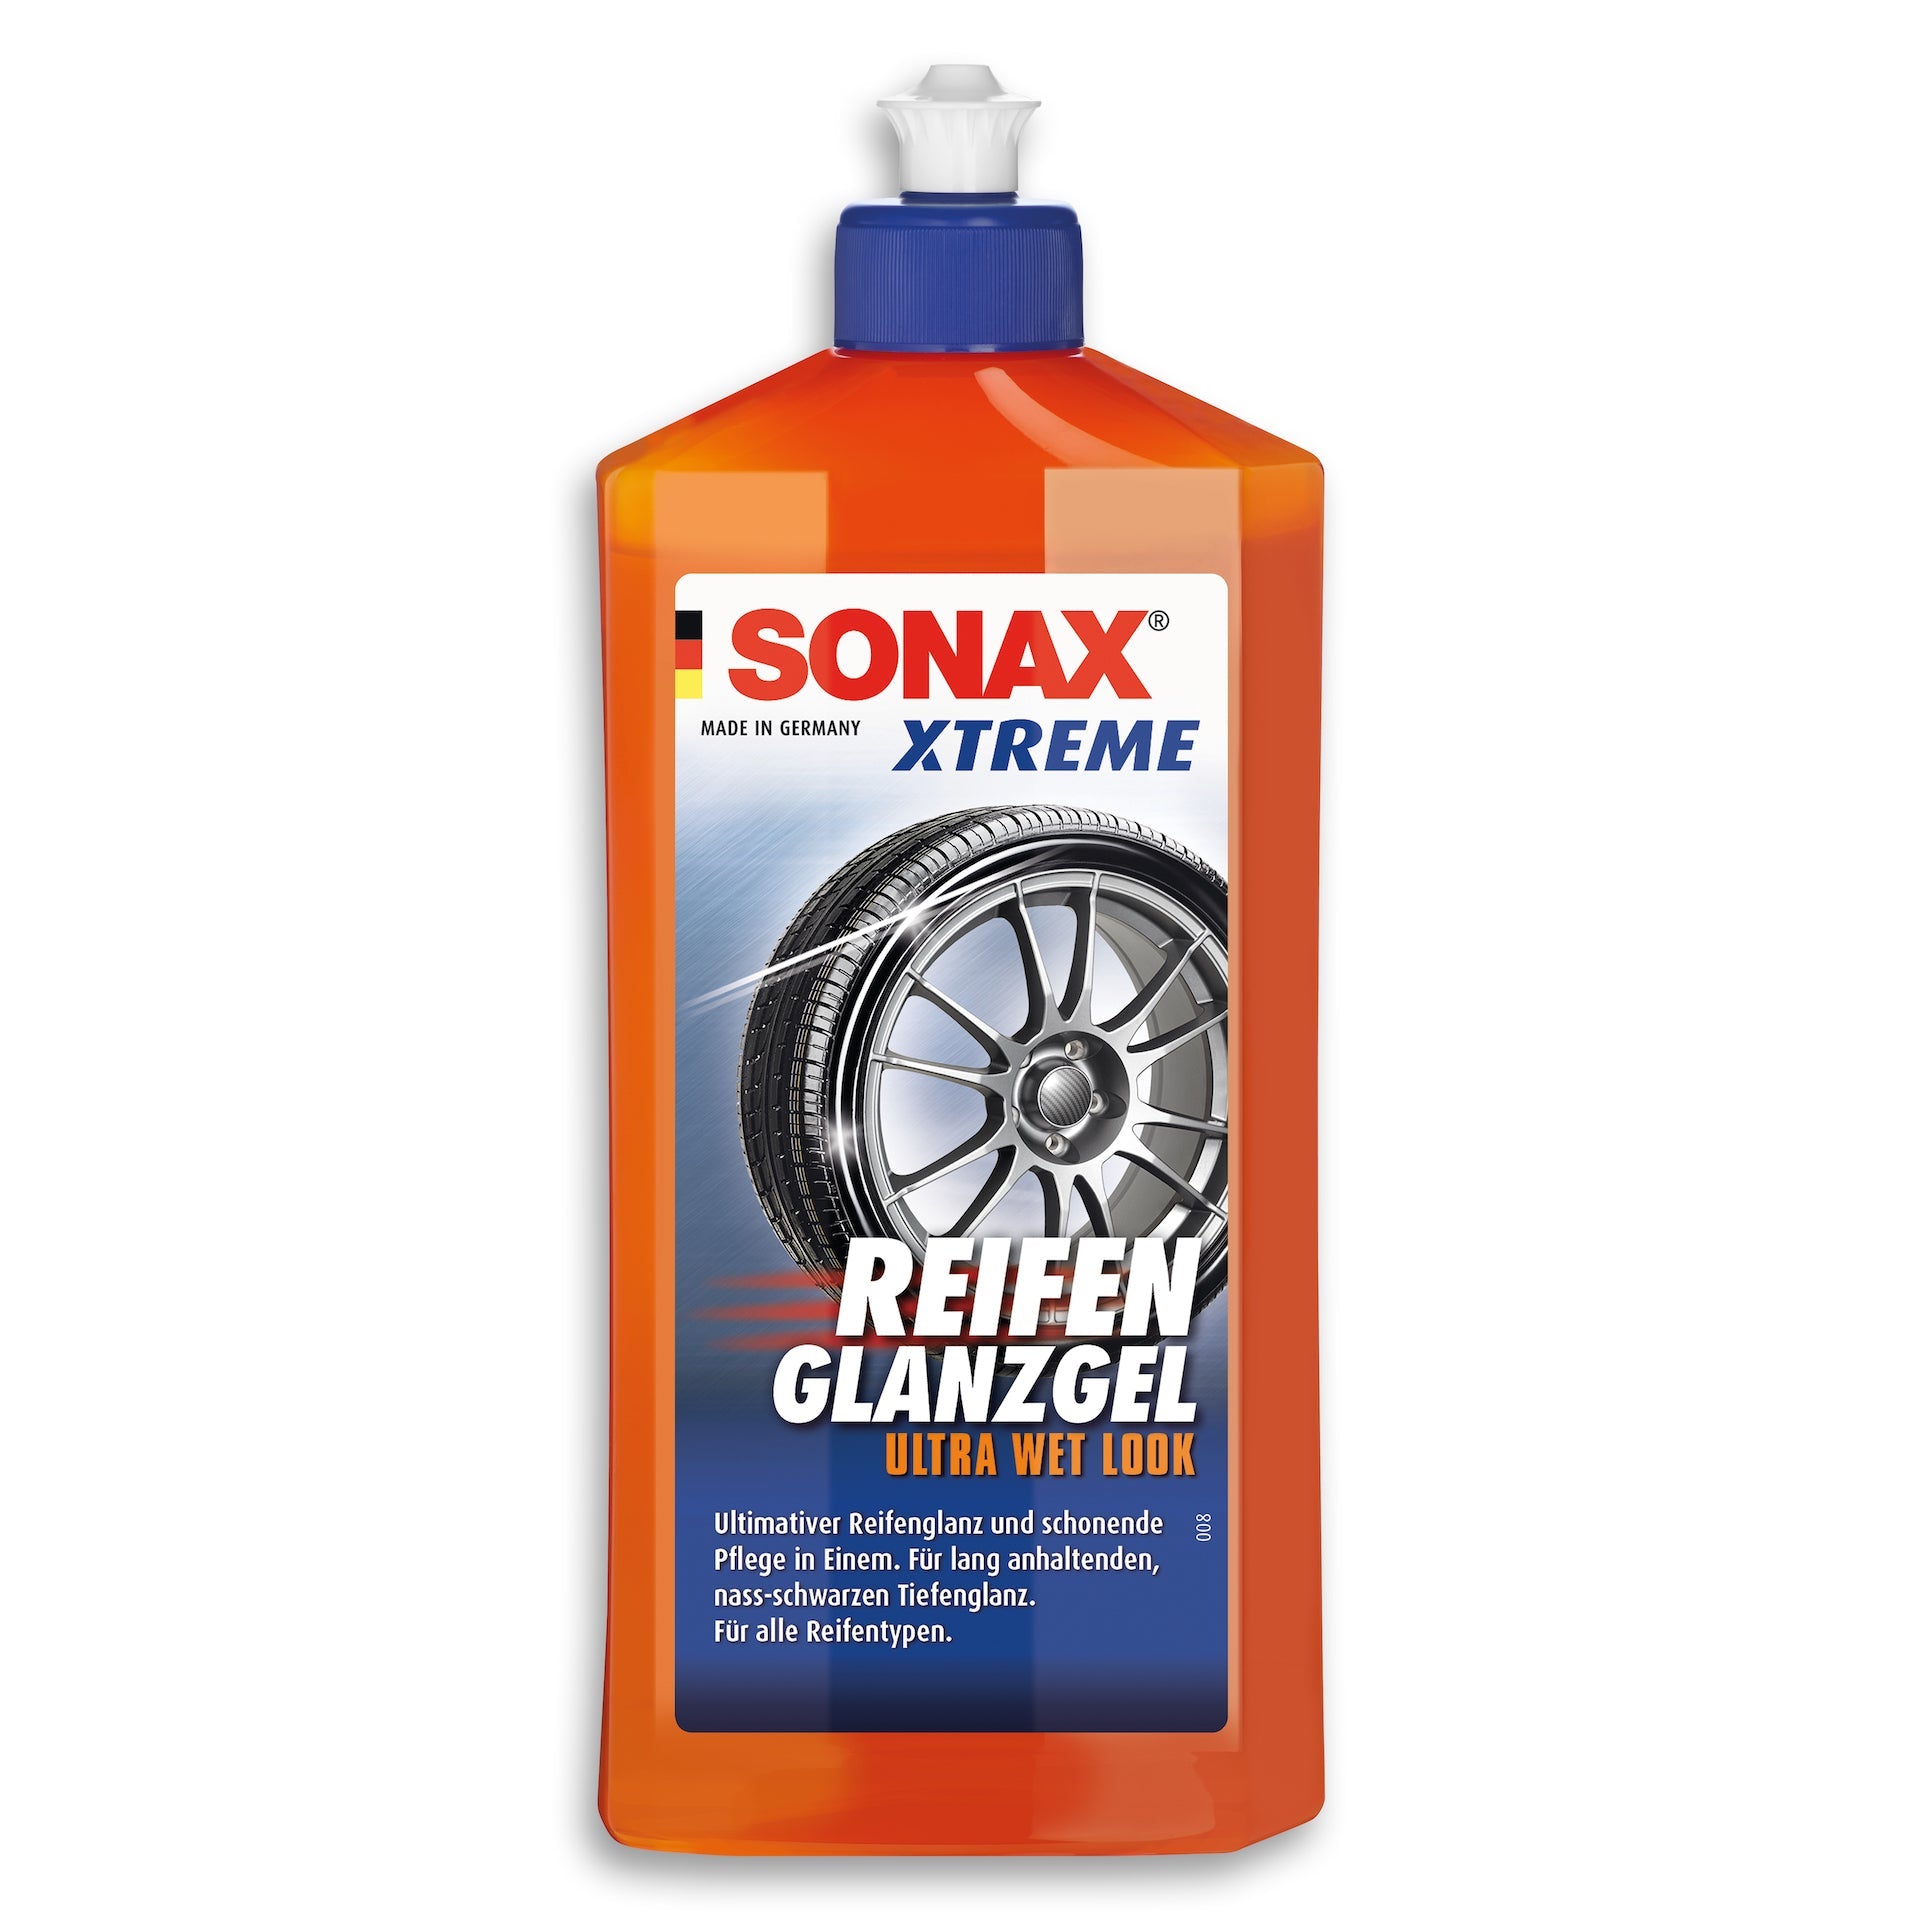 Sonax Xtreme Reifen Glanzgel - Shop4Tesla